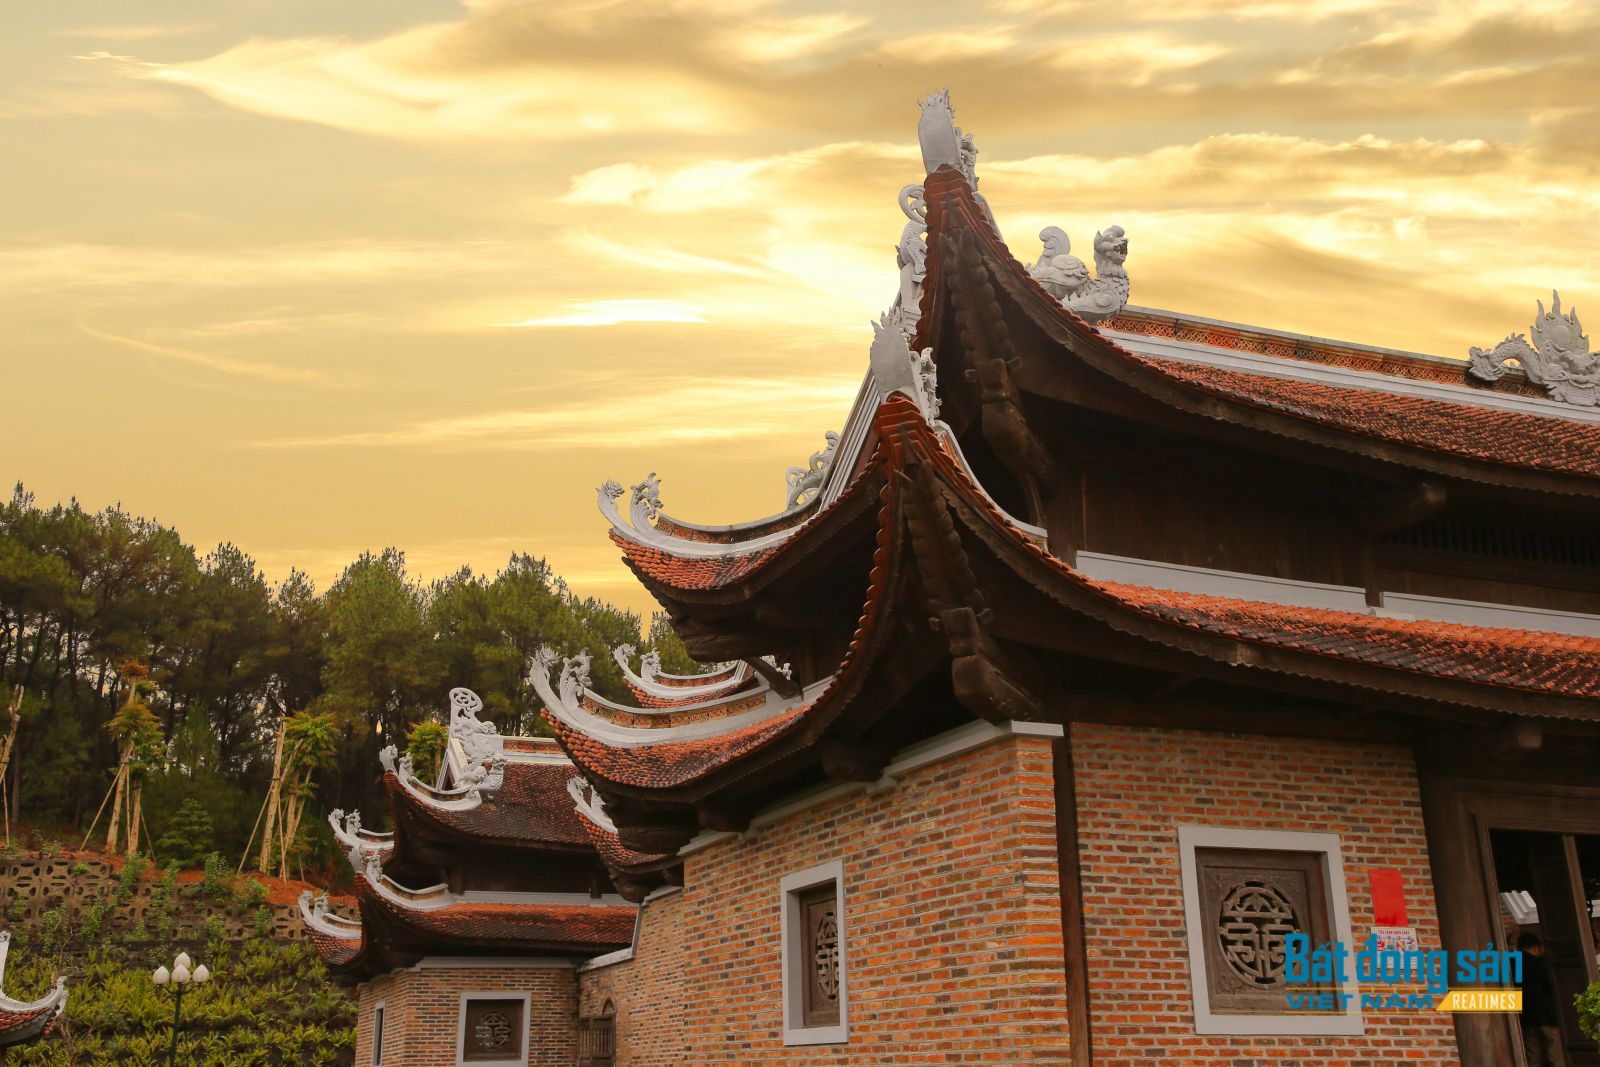 đền Chung Sơn, đền thờ gia tiên Hồ Chủ Tịch, khu di tích Kim Liên,